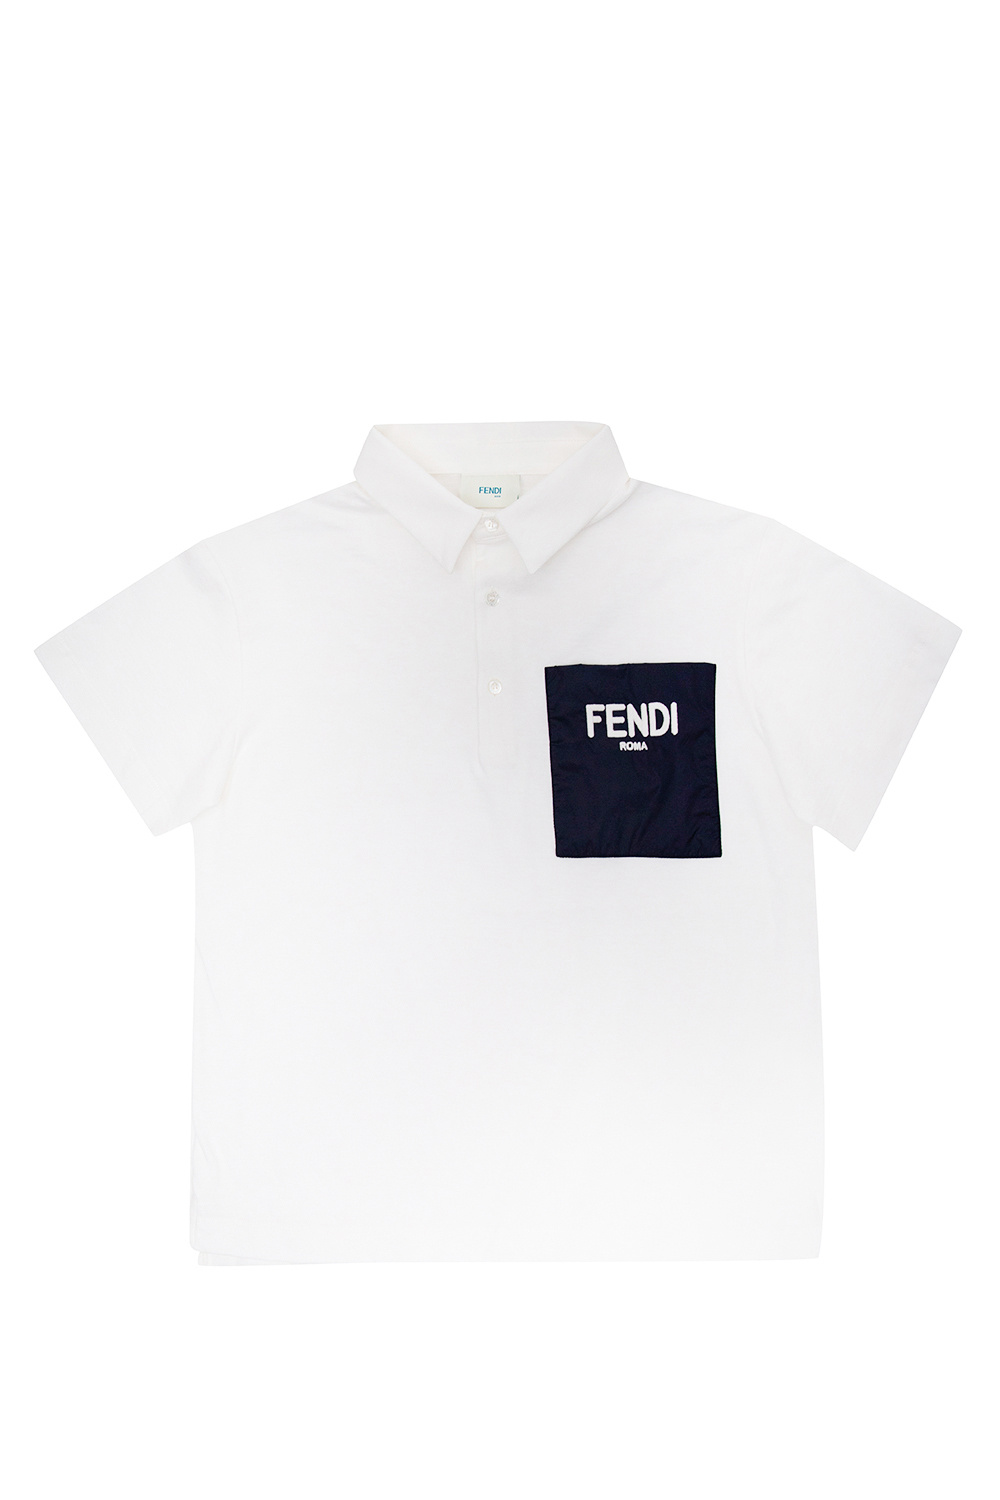 Fendi Kids polo White shirt with logo